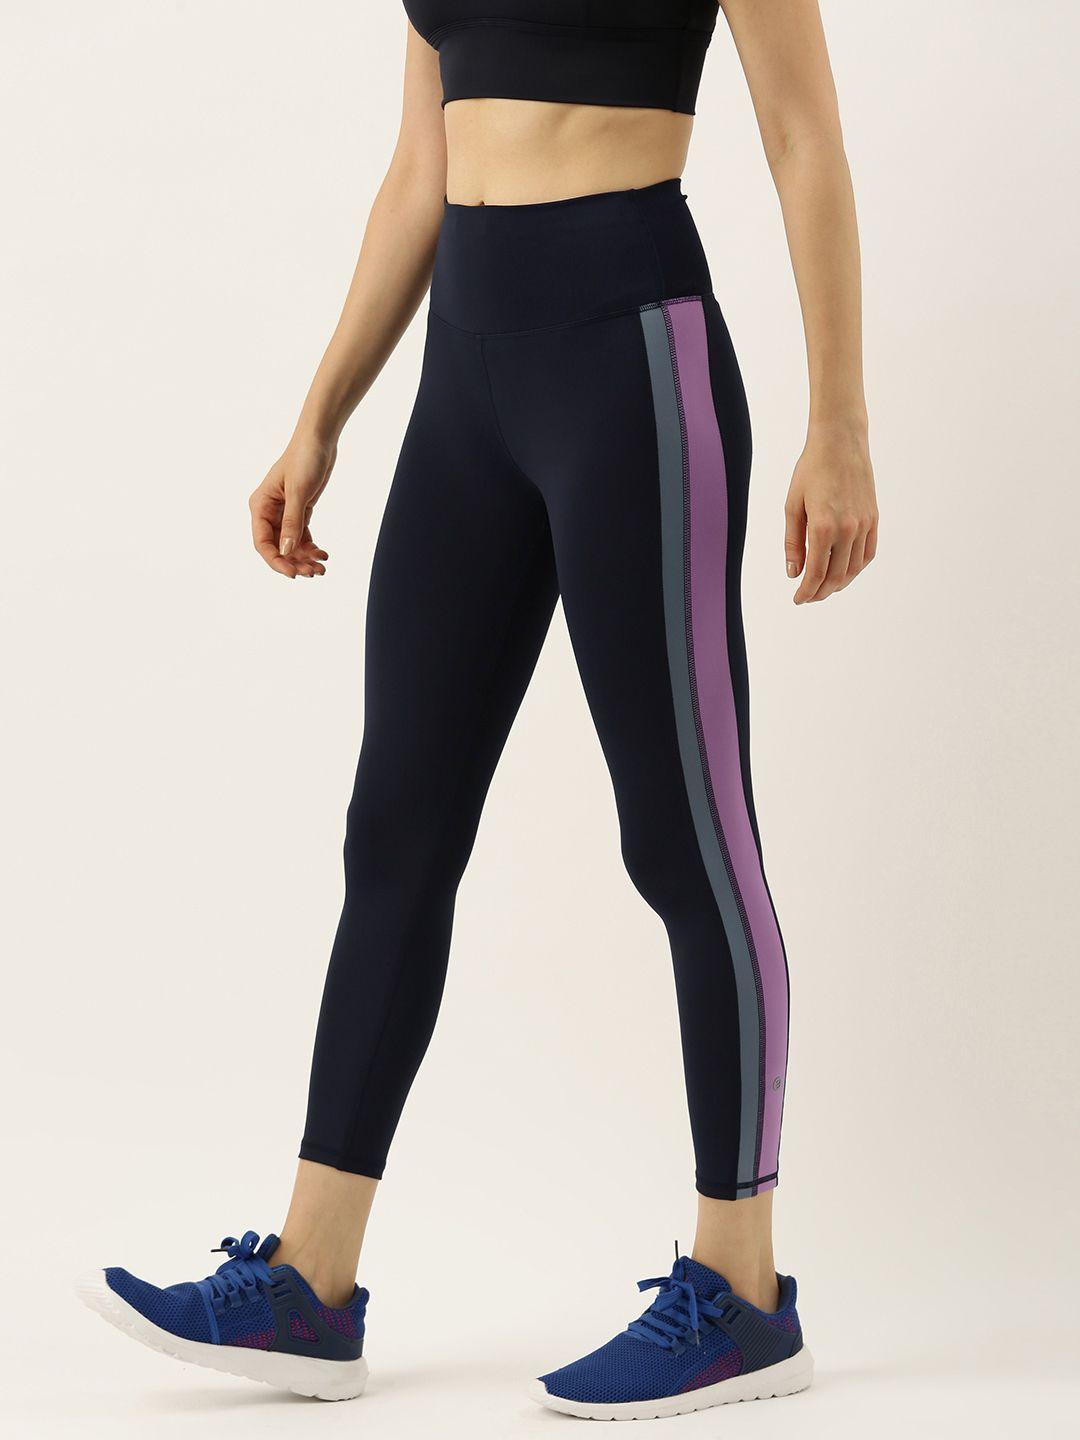 enamor women navy blue athleisure high waisted leggings